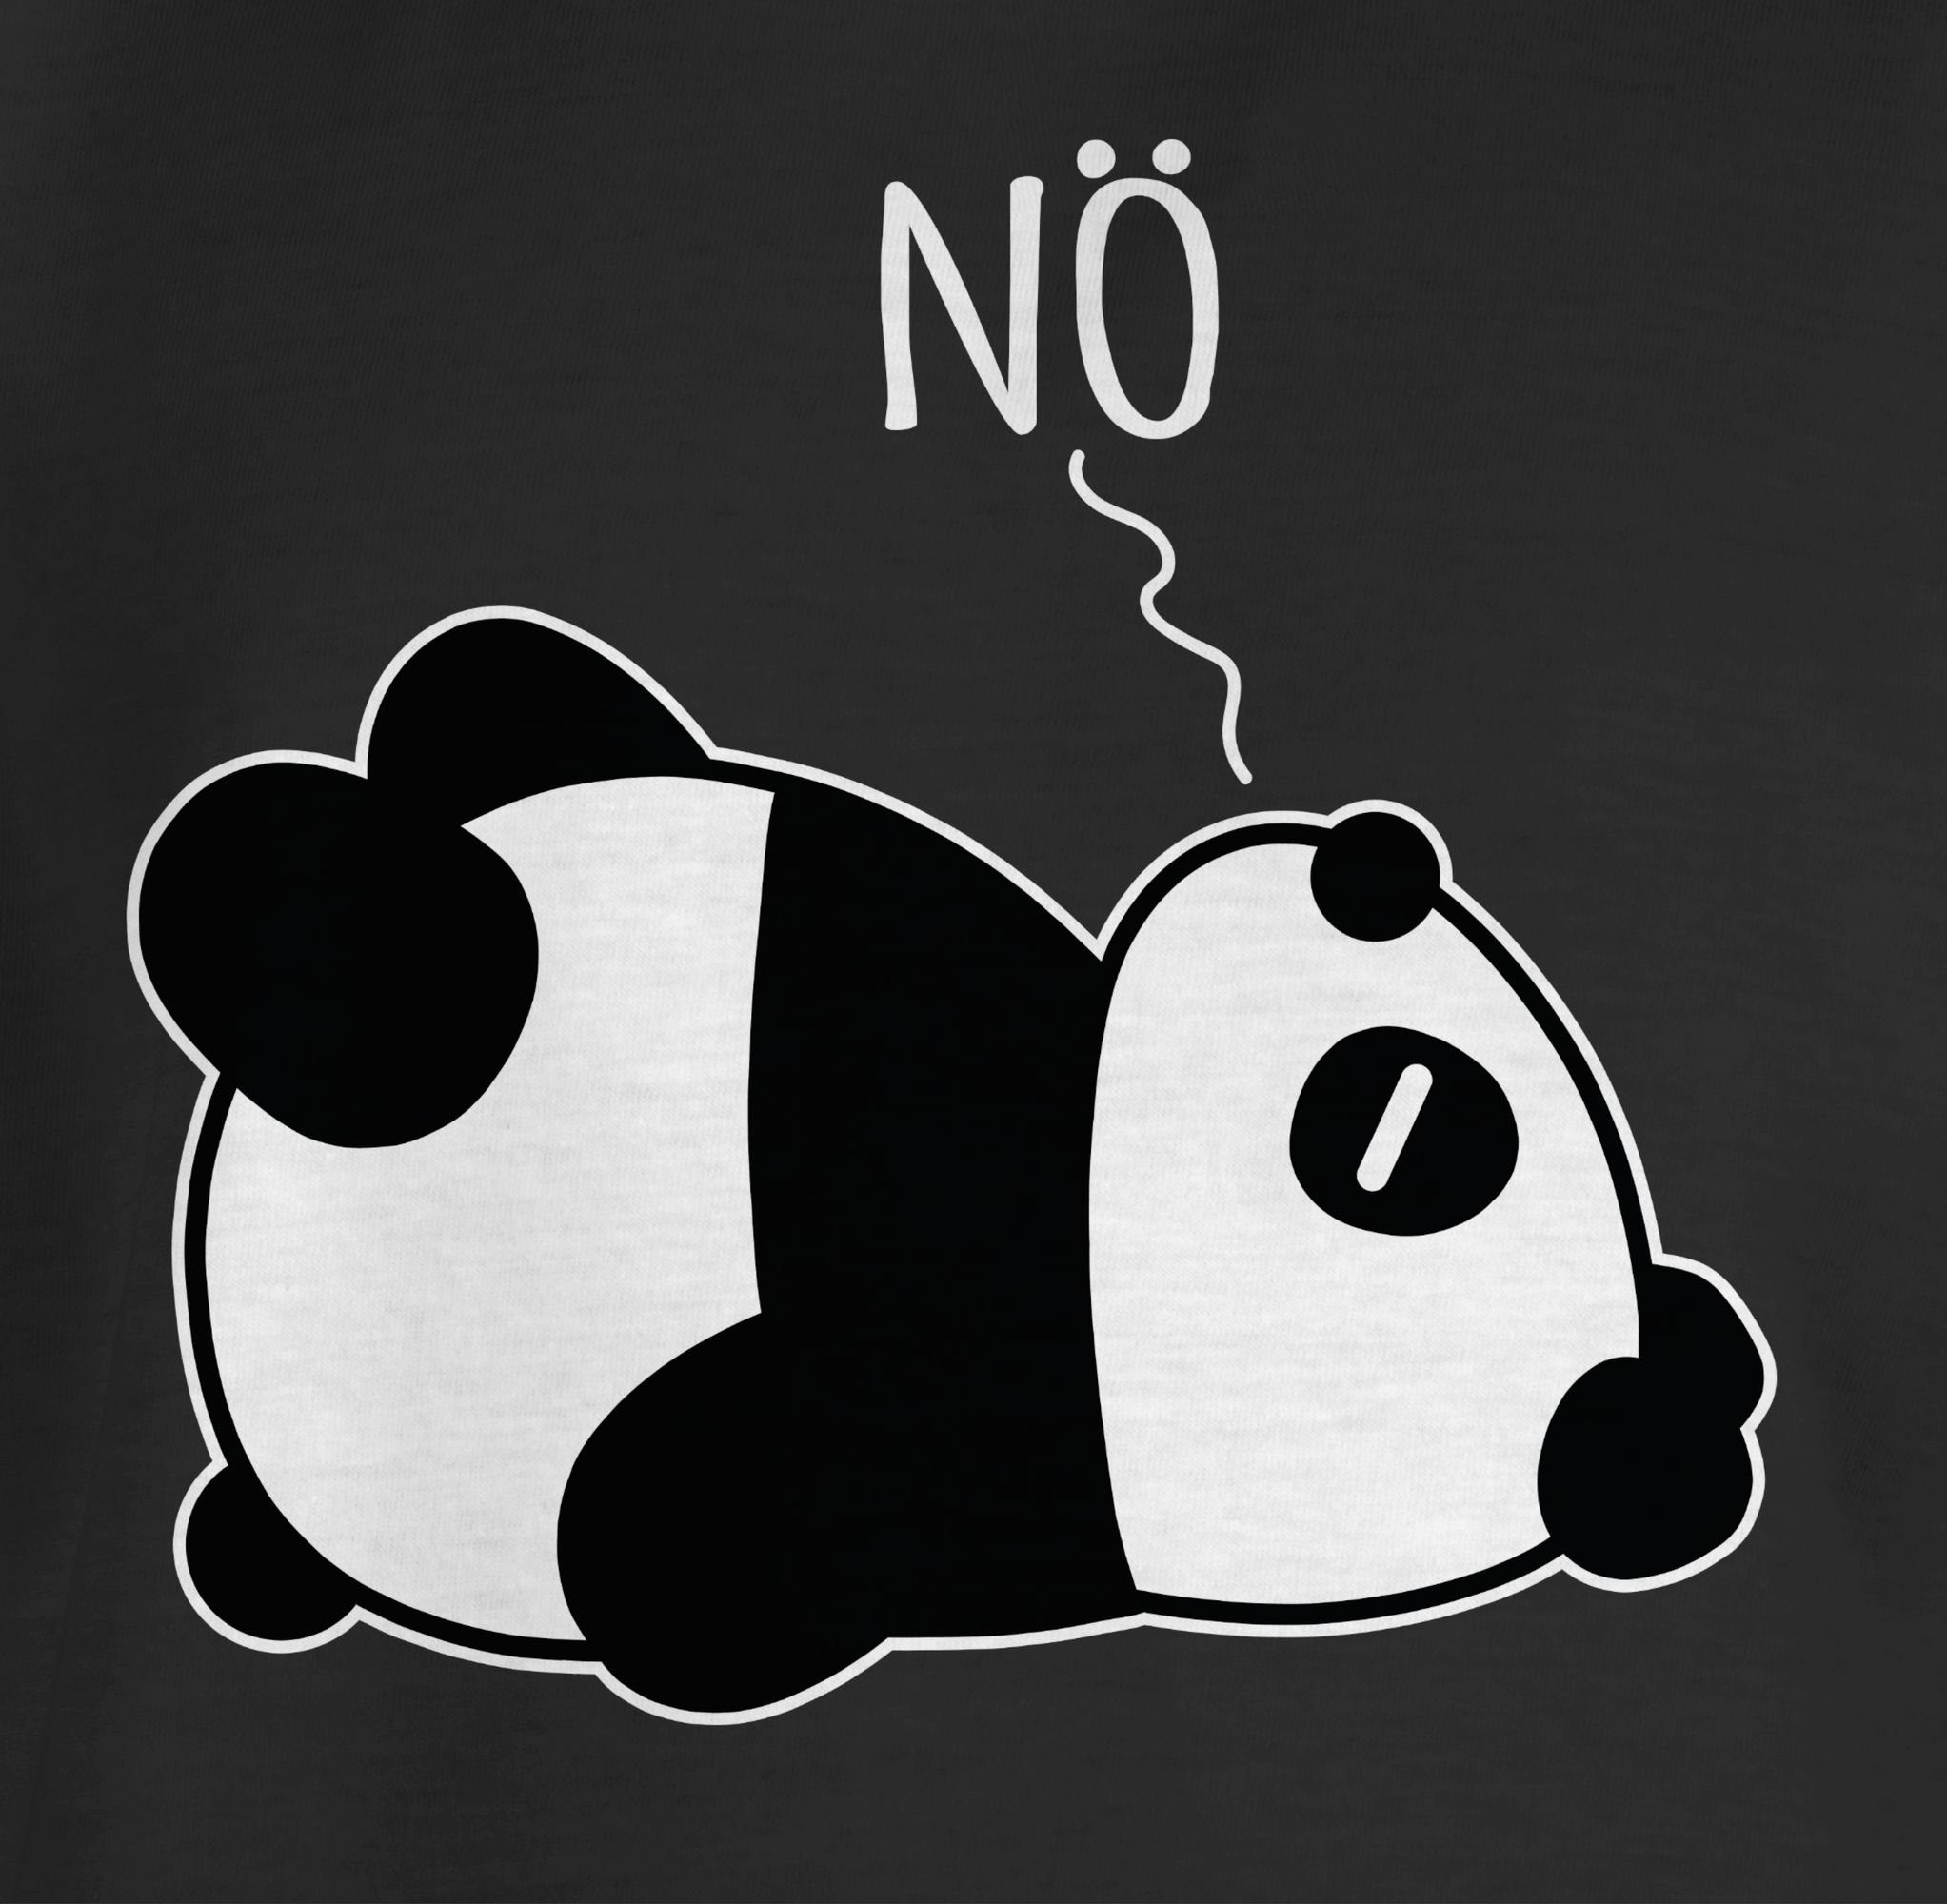 Kinder weiß Panda Statement - Schwarz Shirtracer - Nö Sprüche 1 T-Shirt